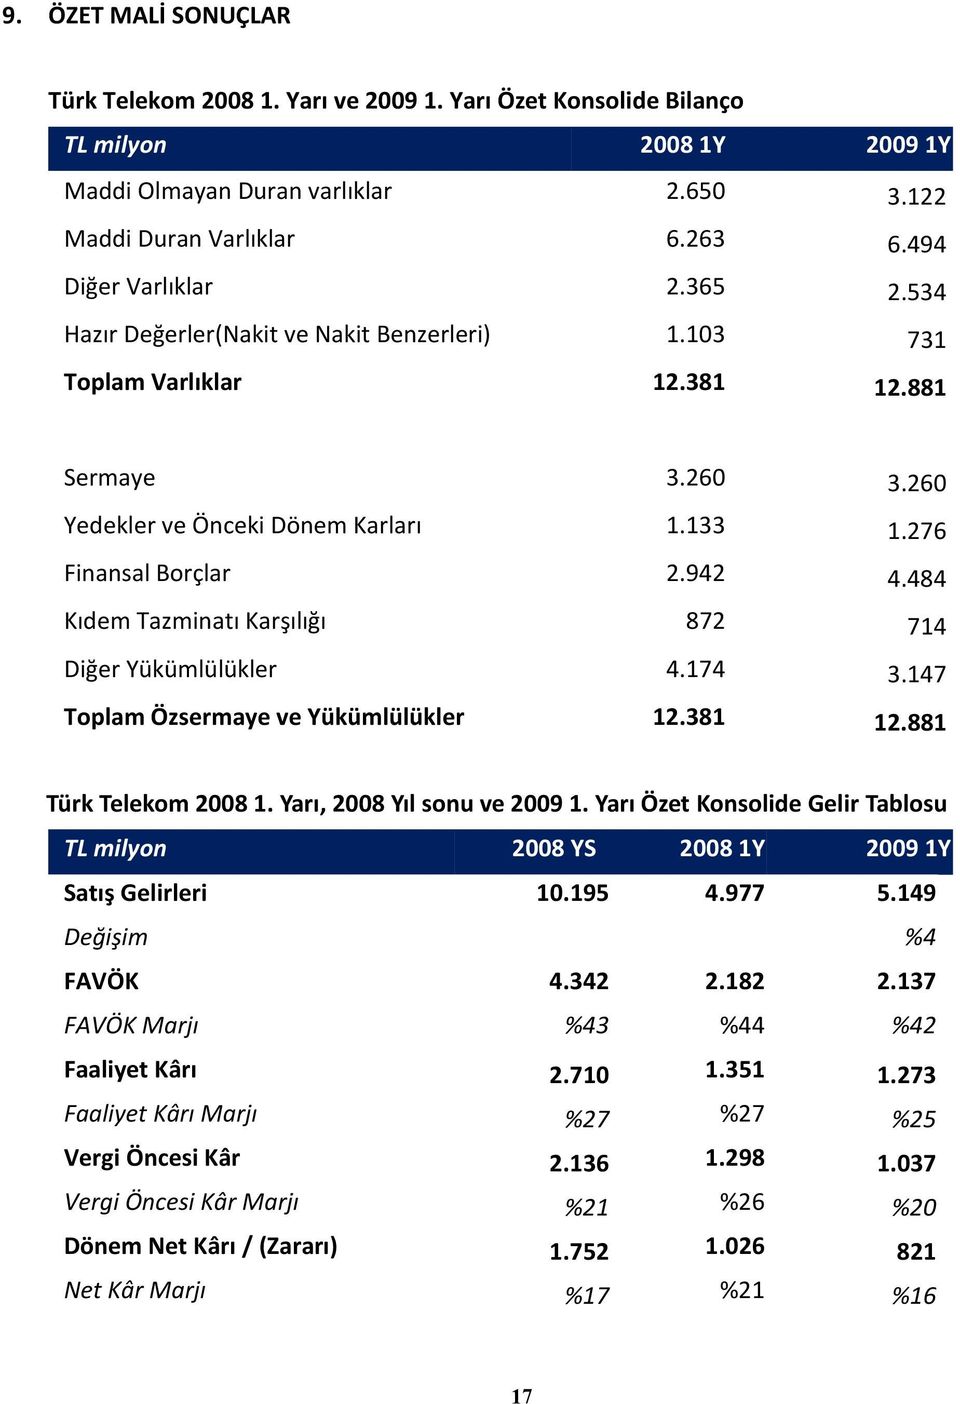 942 4.484 Kıdem Tazminatı Karşılığı 872 714 Diğer Yükümlülükler 4.174 3.147 Toplam Özsermaye ve Yükümlülükler 12.381 12.881 Türk Telekom 20081. Yarı, 2008 Yıl sonu ve 20091.